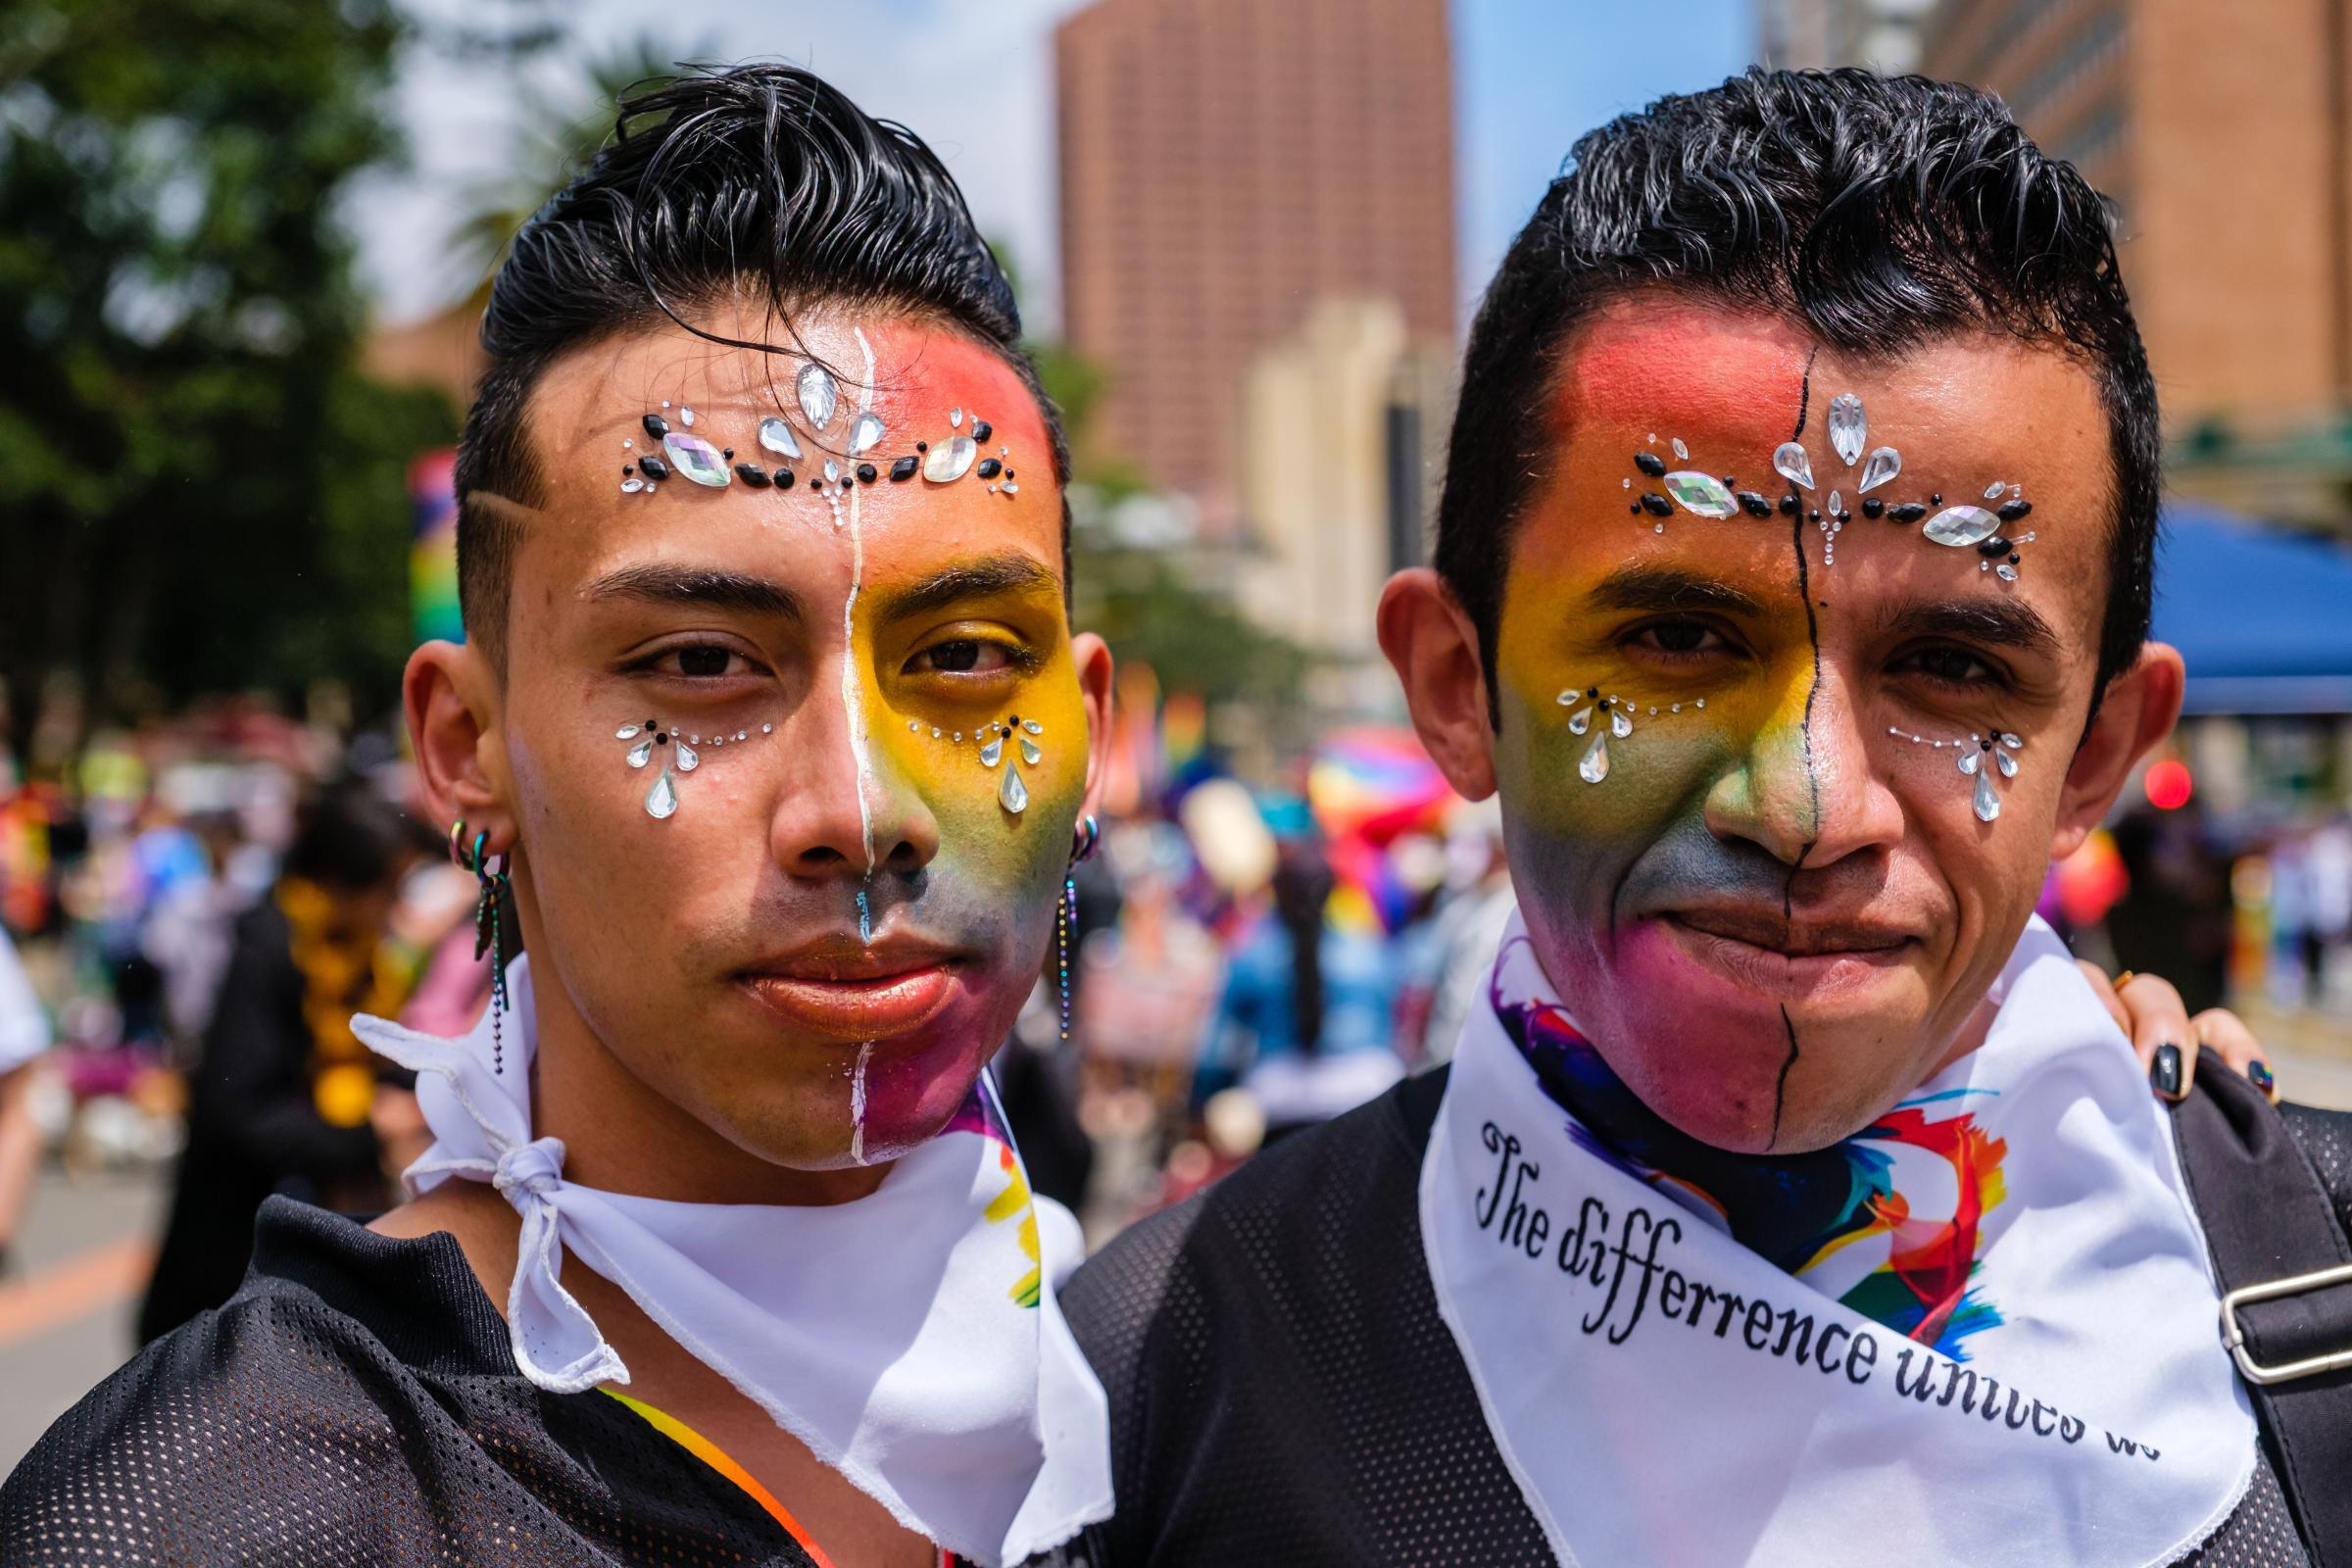 Orgullo 2022 Bogota - Marcha del Orgullo LGBTIQ+ 2022, Bogota, Colombia. PEDRO...